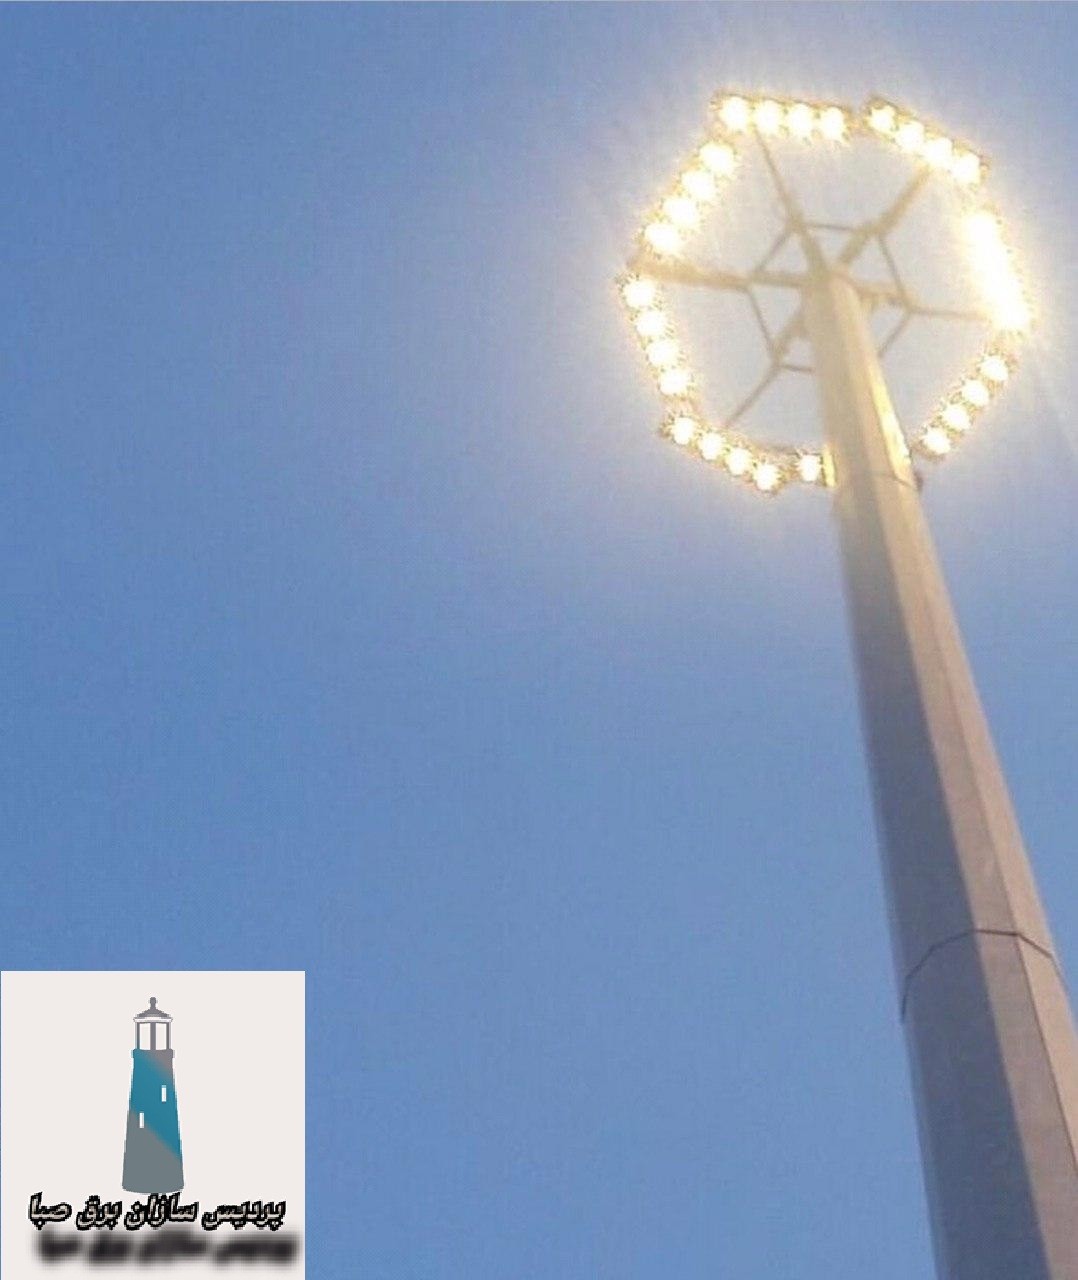 ساخت و نصب انواع برج نوری ( روشنایی ) و برج پرچم مرتفع توسط گروه صنعتی پردیس سازان برق صبا